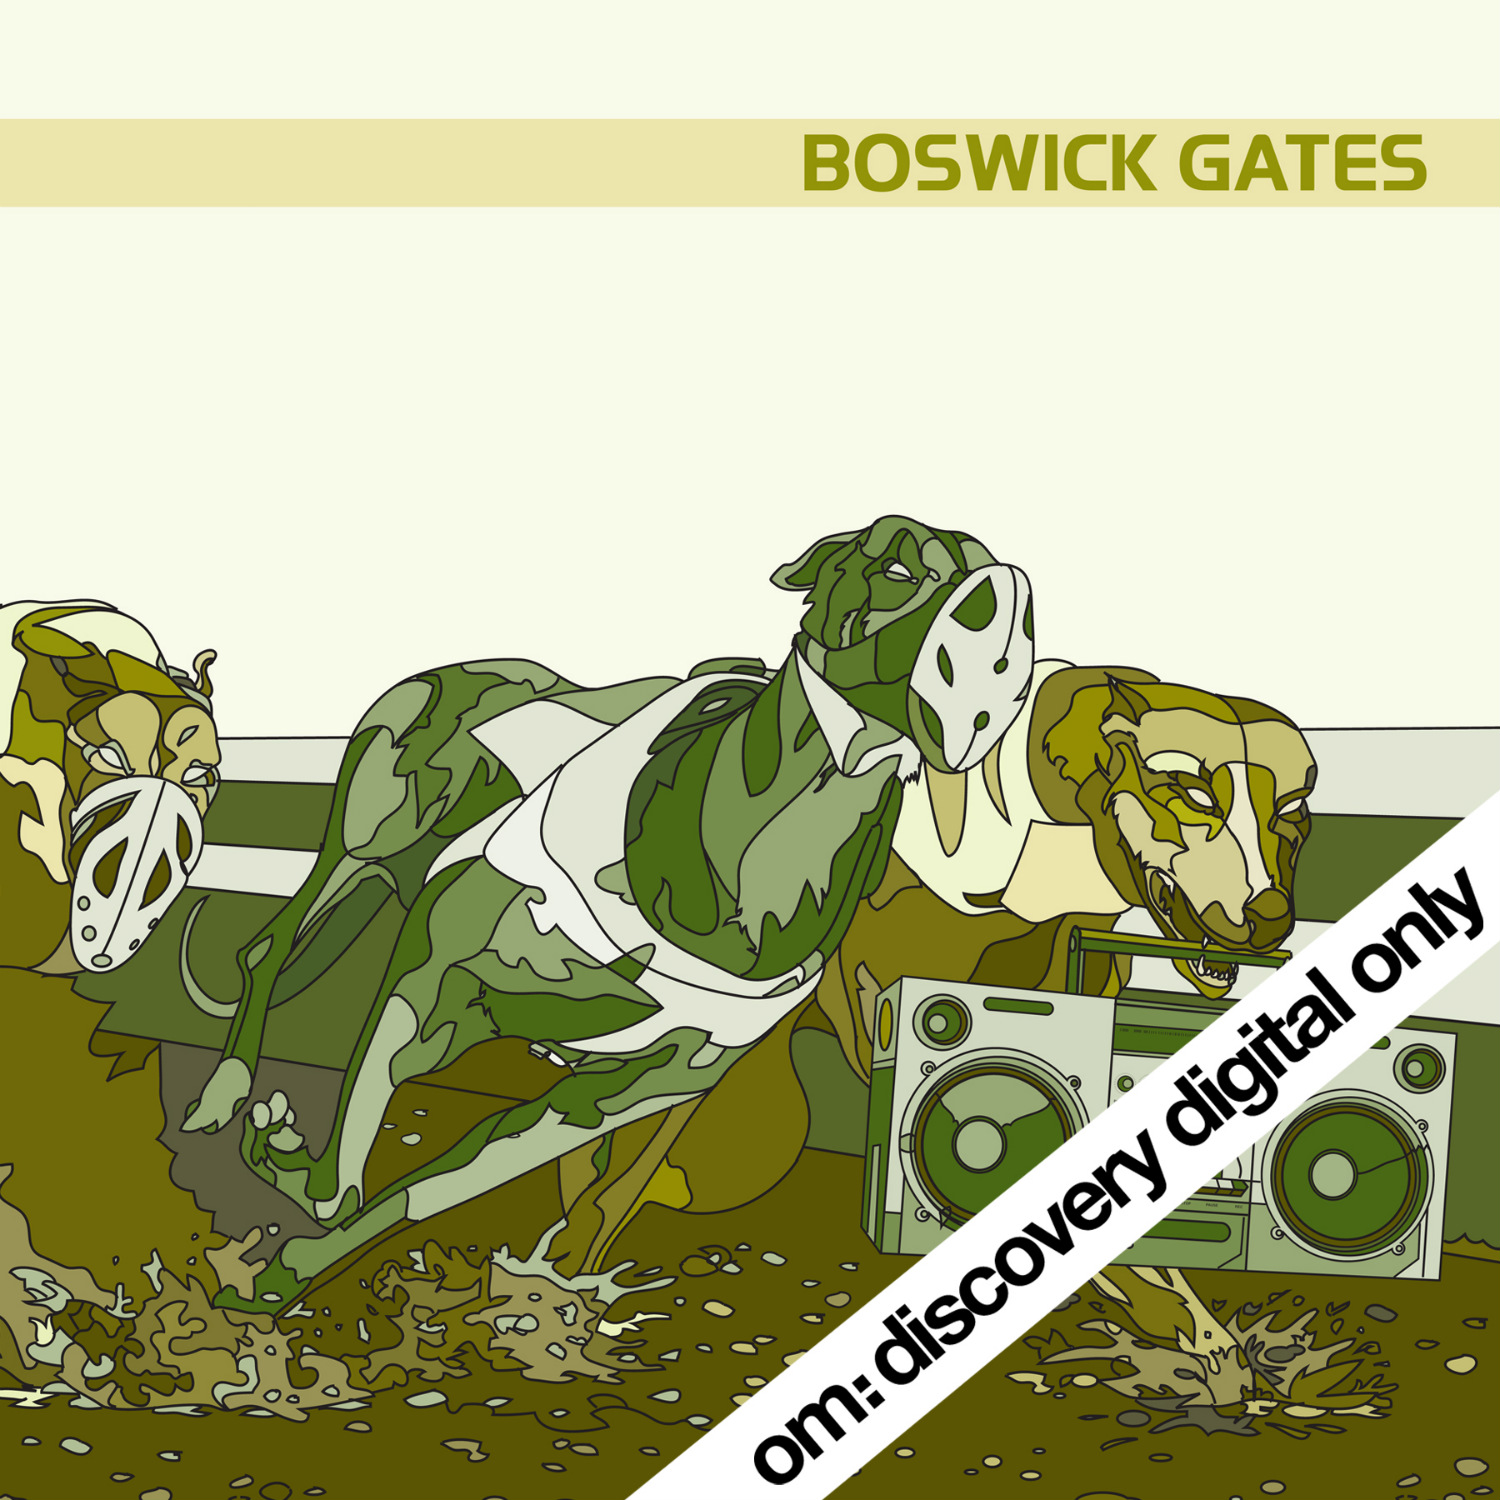 Boswick Gates - Boswick Gates